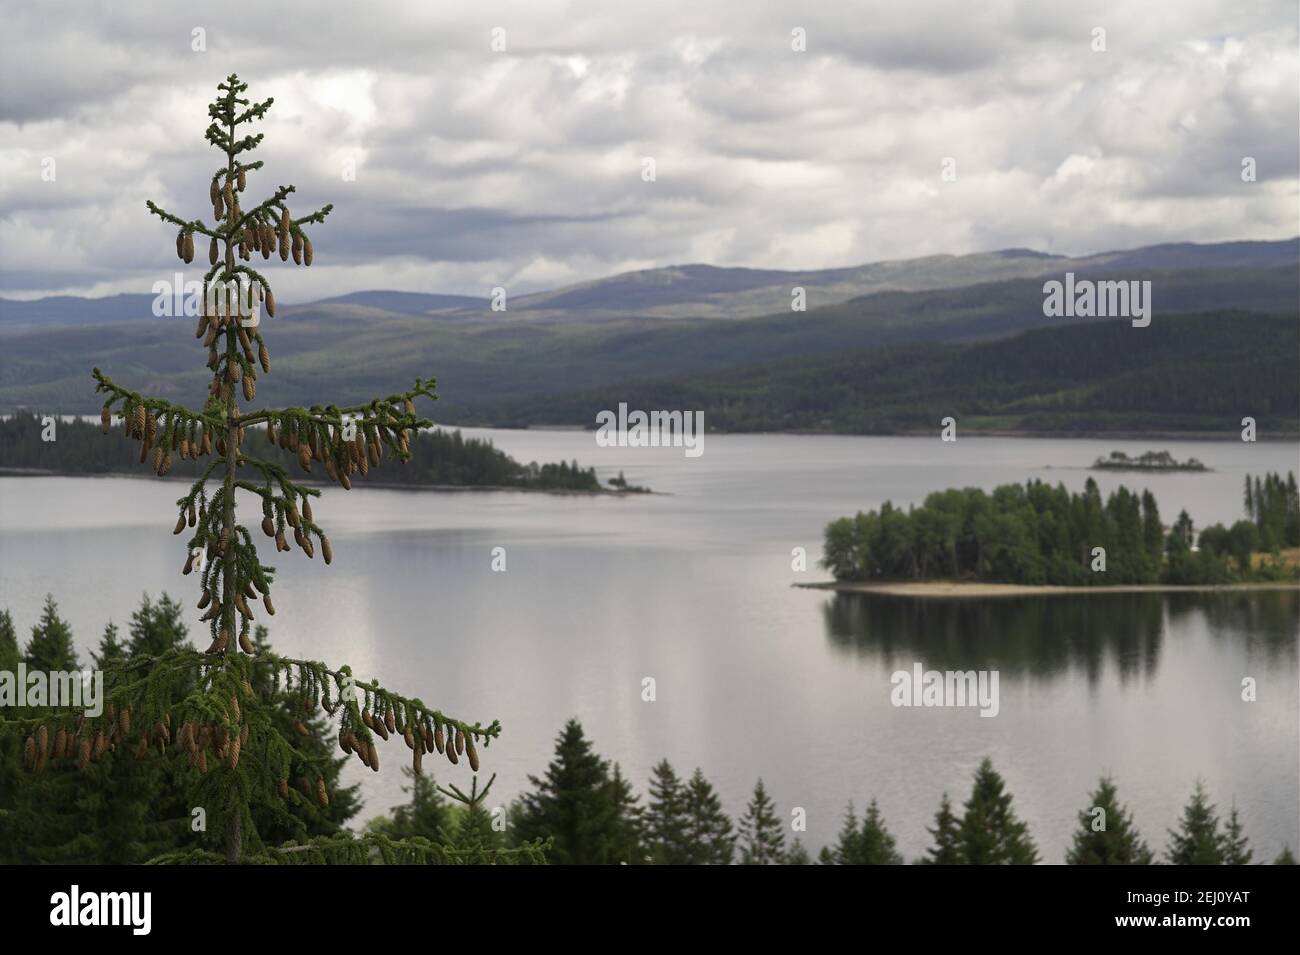 Norwegen, Norwegen; Seen und Hügel umgeben von Grün - eine typische Sommerlandschaft Mittelnorwegens. Eine typische Landschaft Mittelnorwegens. Stockfoto